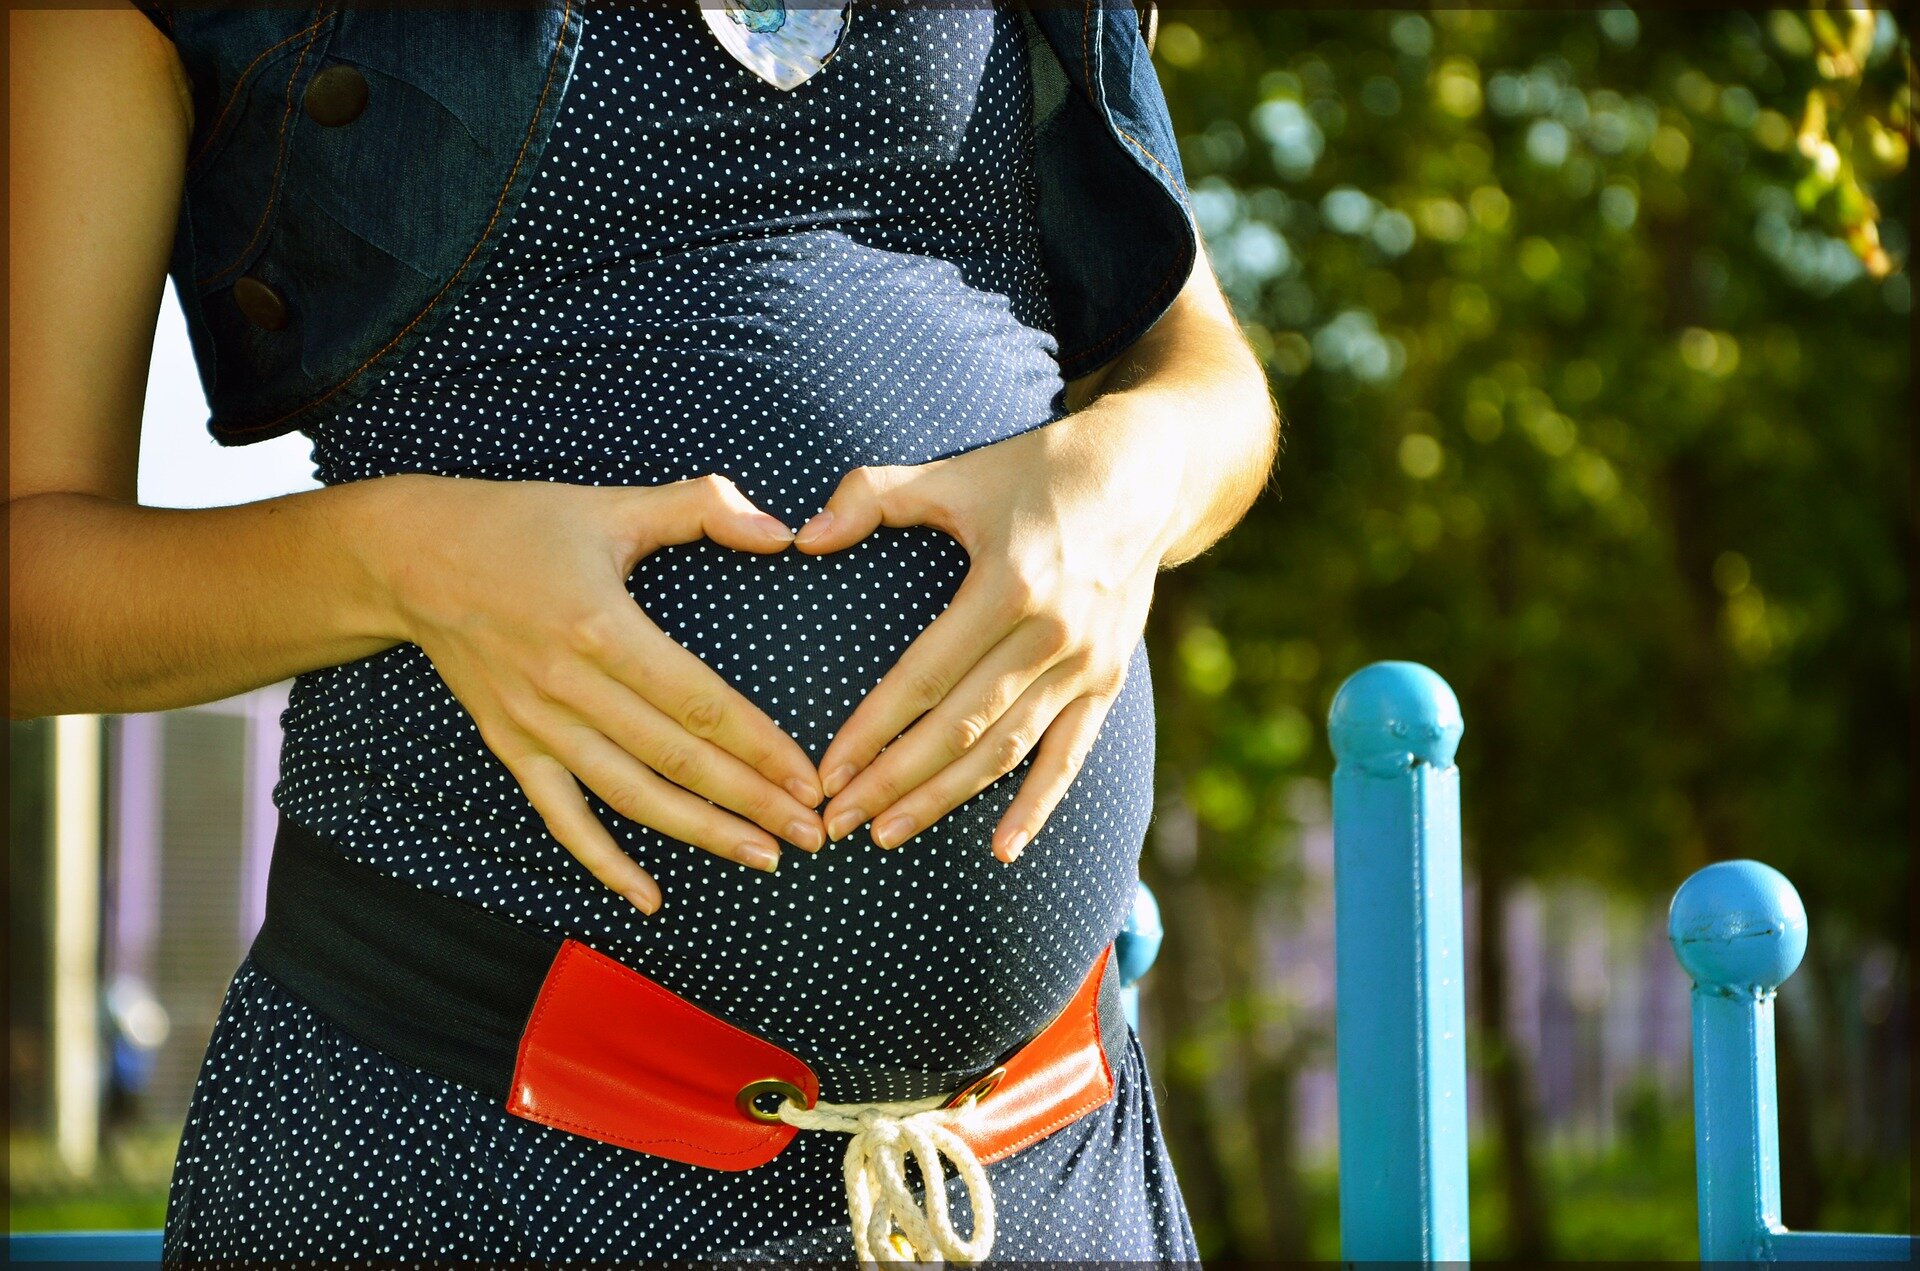 Les naissances précoces – entre 34 et 37 semaines – pour les mères atteintes de pré-éclampsie peuvent réduire les décès de bébés et de mères